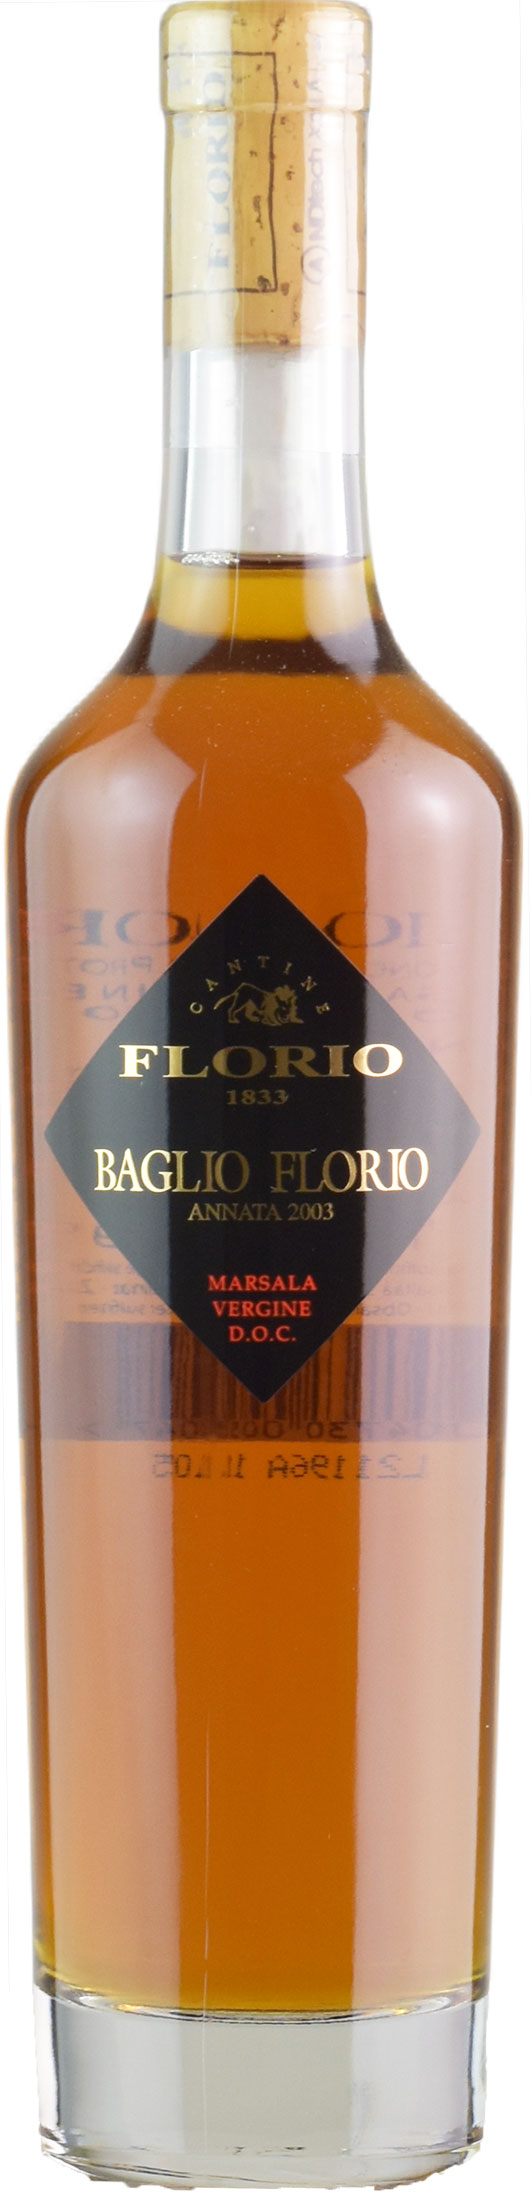 Florio Marsala Baglio Florio 0,5L 2003